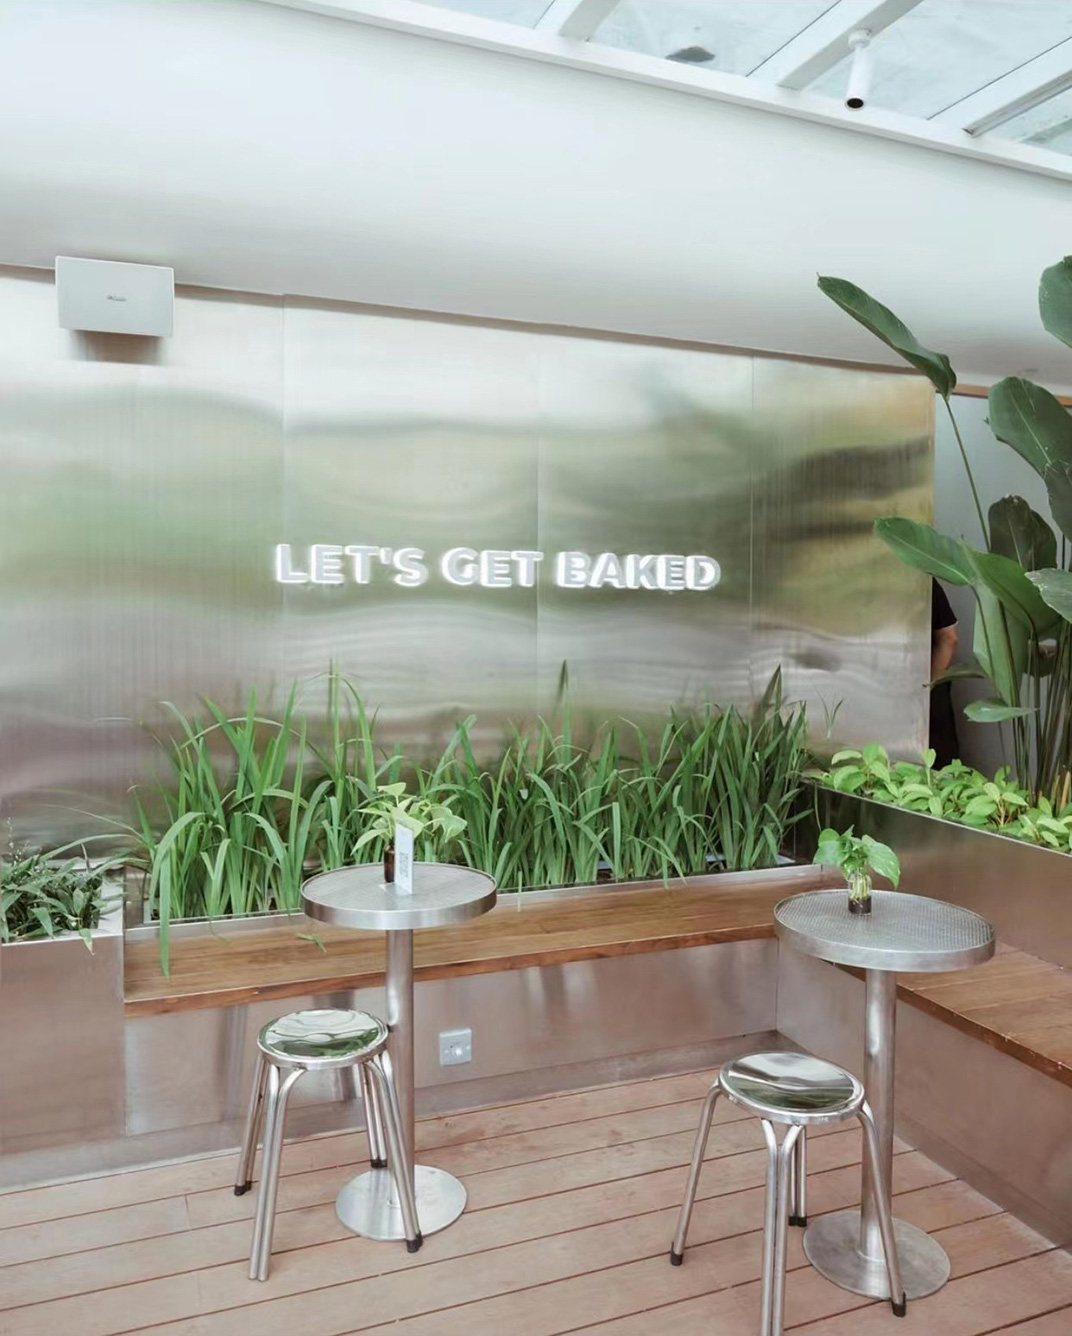 干净整洁的面包店咖啡店空间 印度尼西亚 上海 面包店 咖啡店 不锈钢 金属网 logo设计 vi设计 空间设计